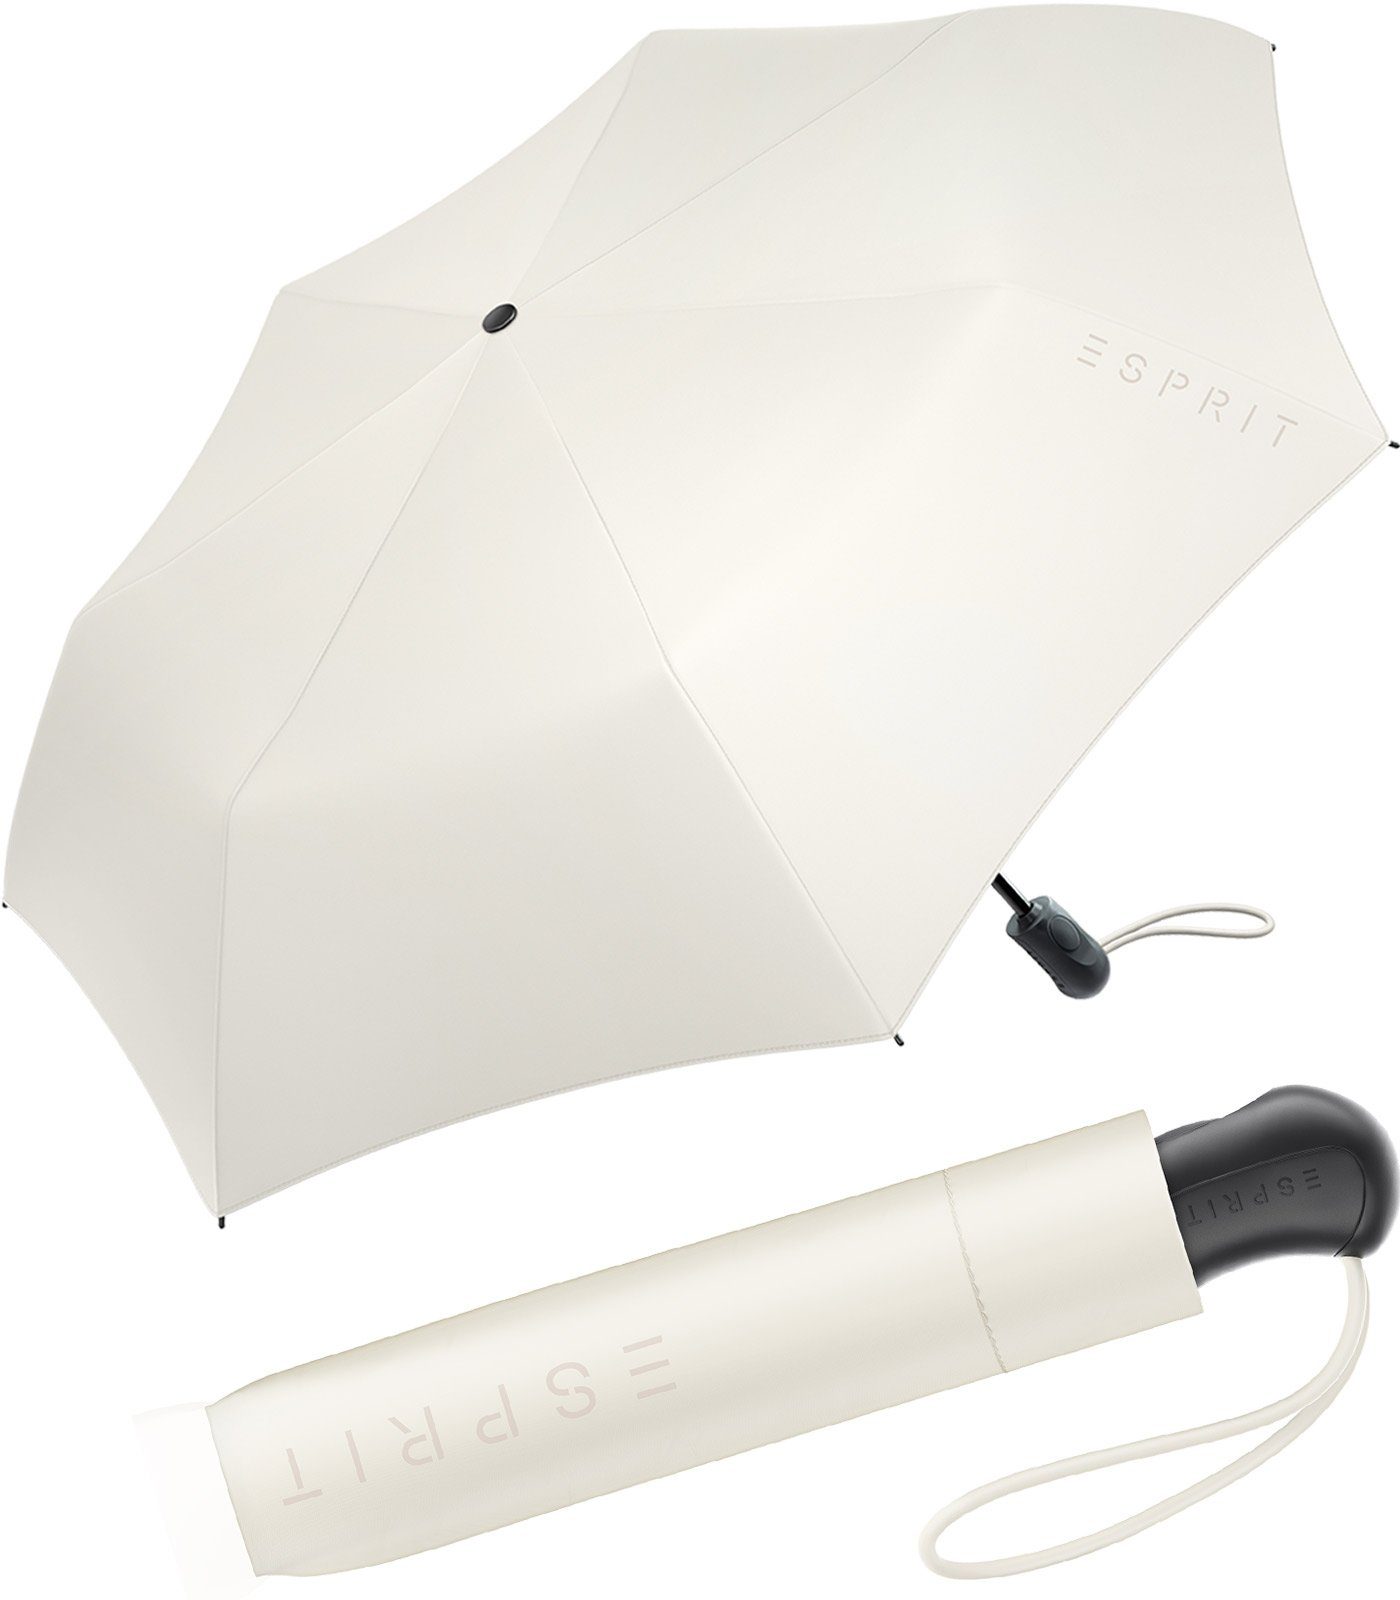 Damen Esprit Auf-Zu Easymatic ivory stabil den Light und Automatik in praktisch, 2022, neuen Trendfarben Taschenregenschirm FJ